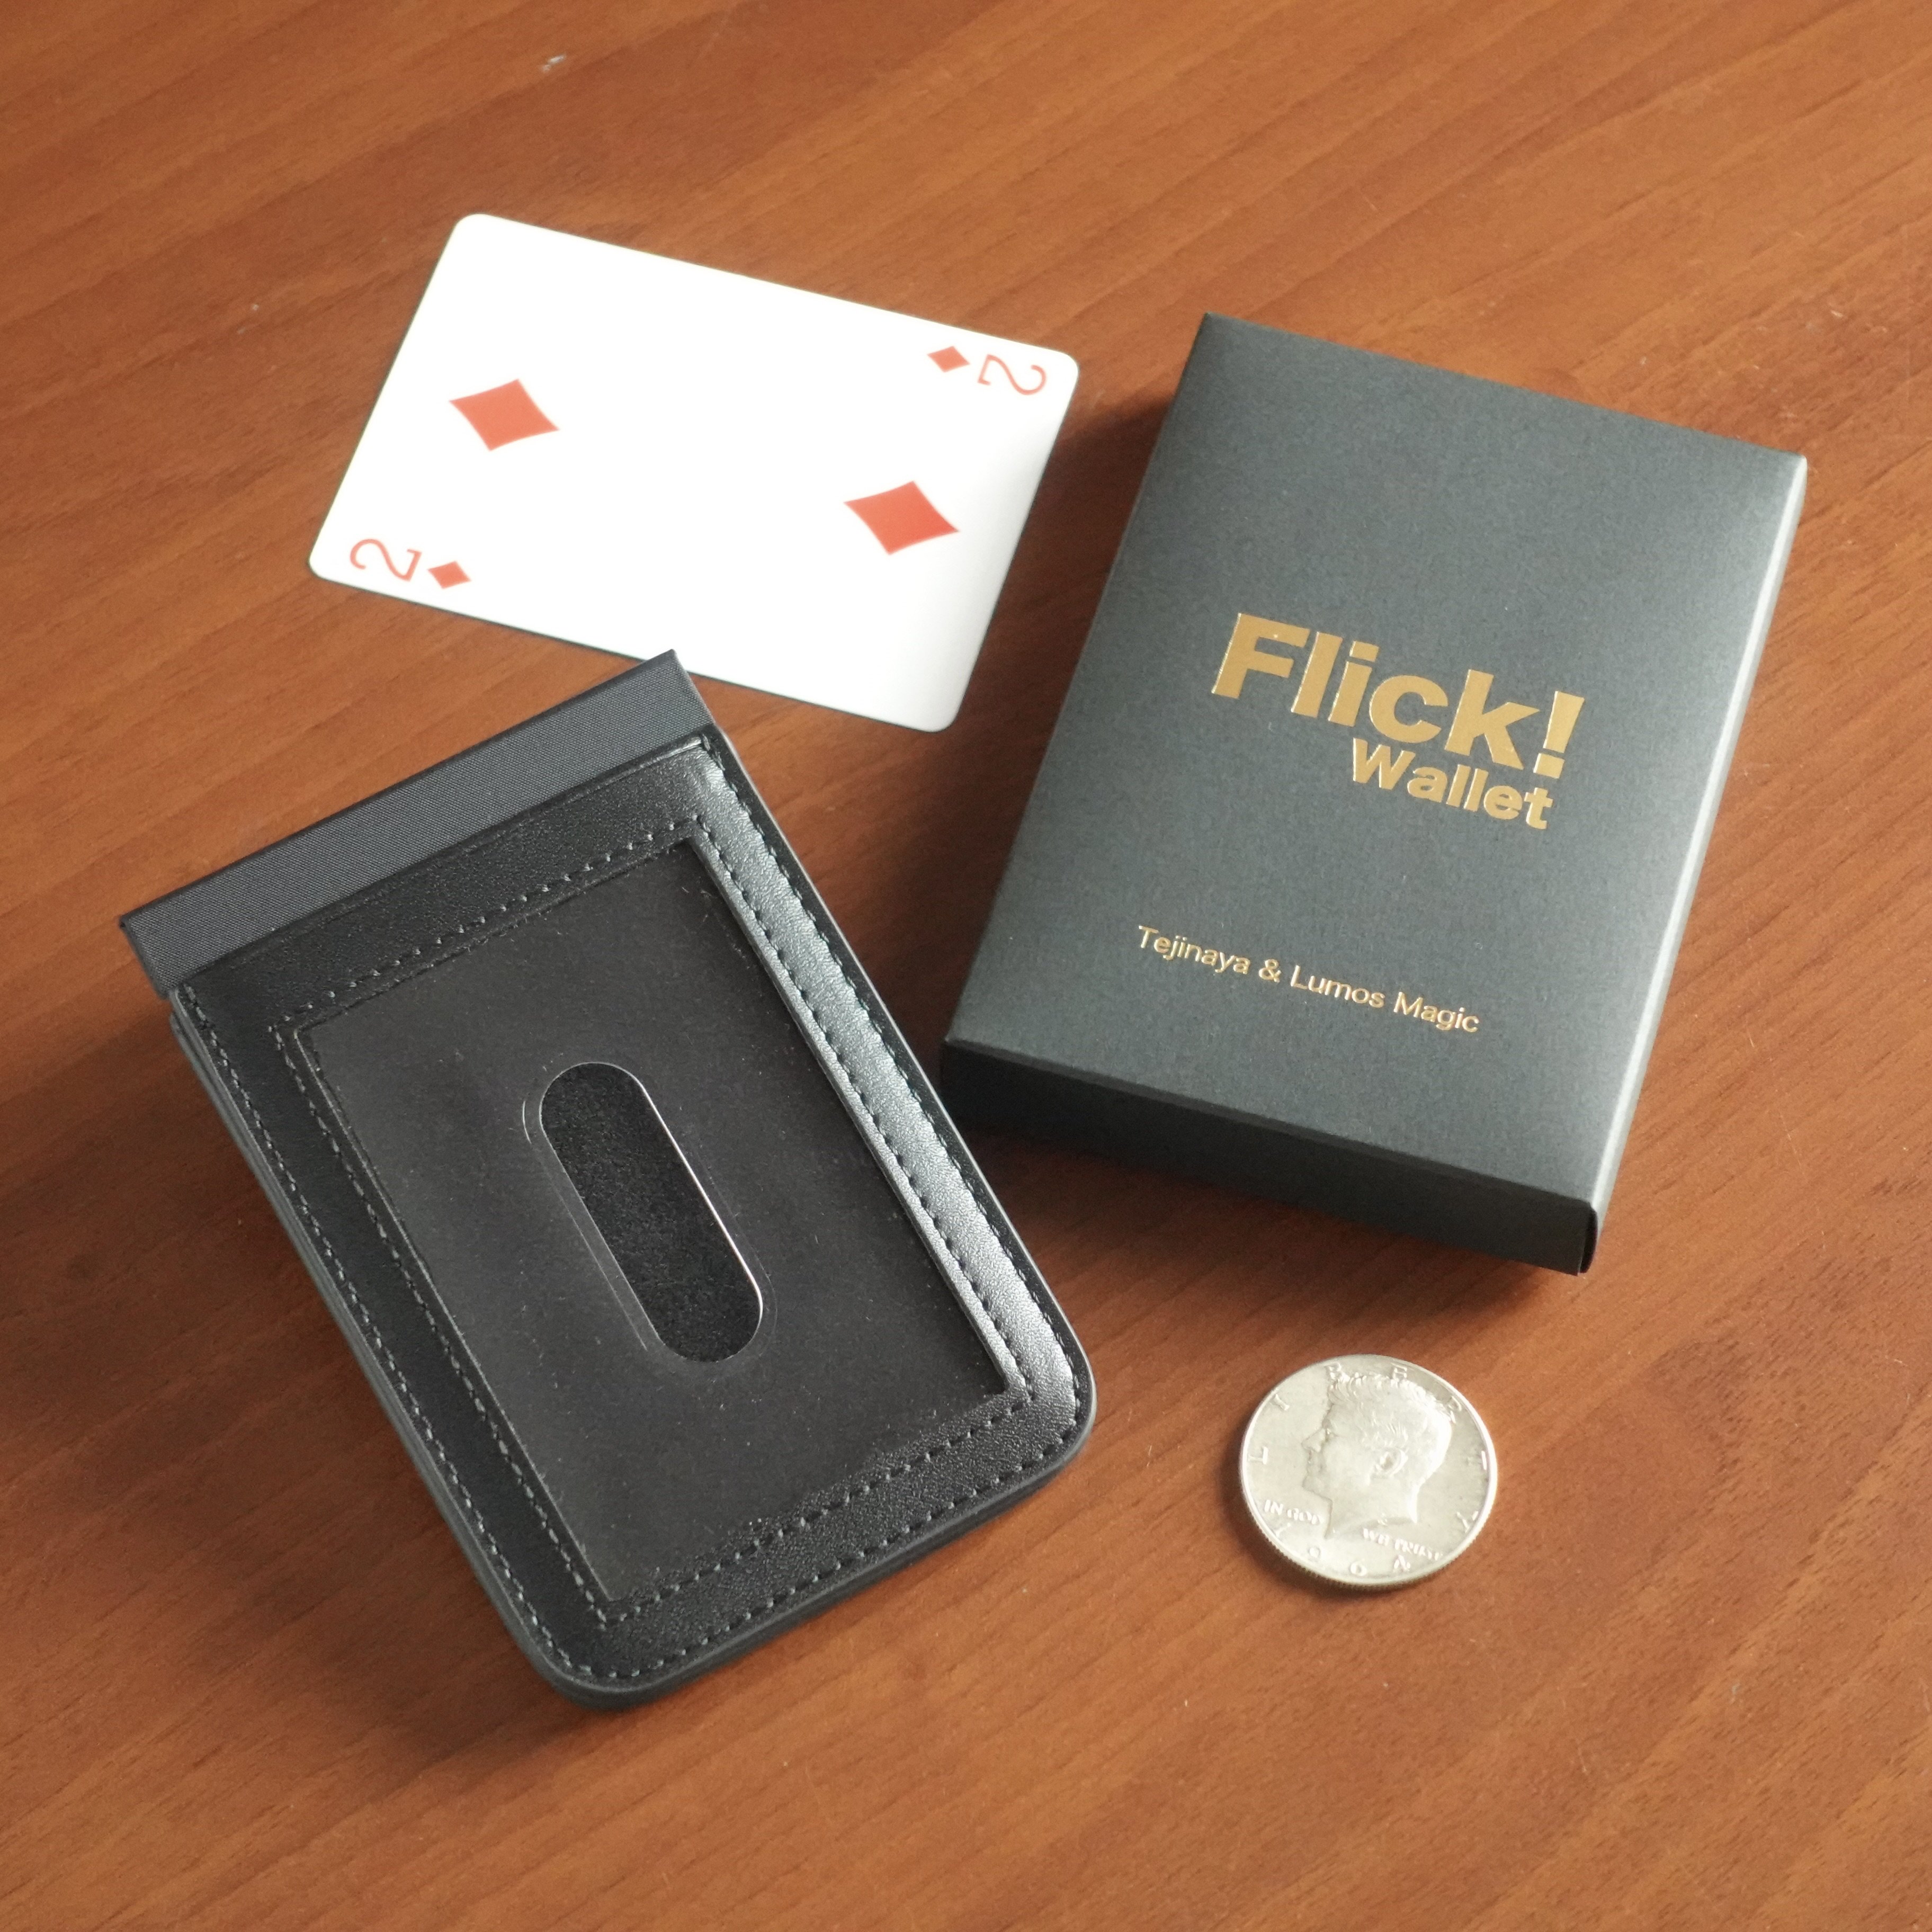 Flick!Wallet by.Tejinaya&Lumos　フリックワレット - 手品屋